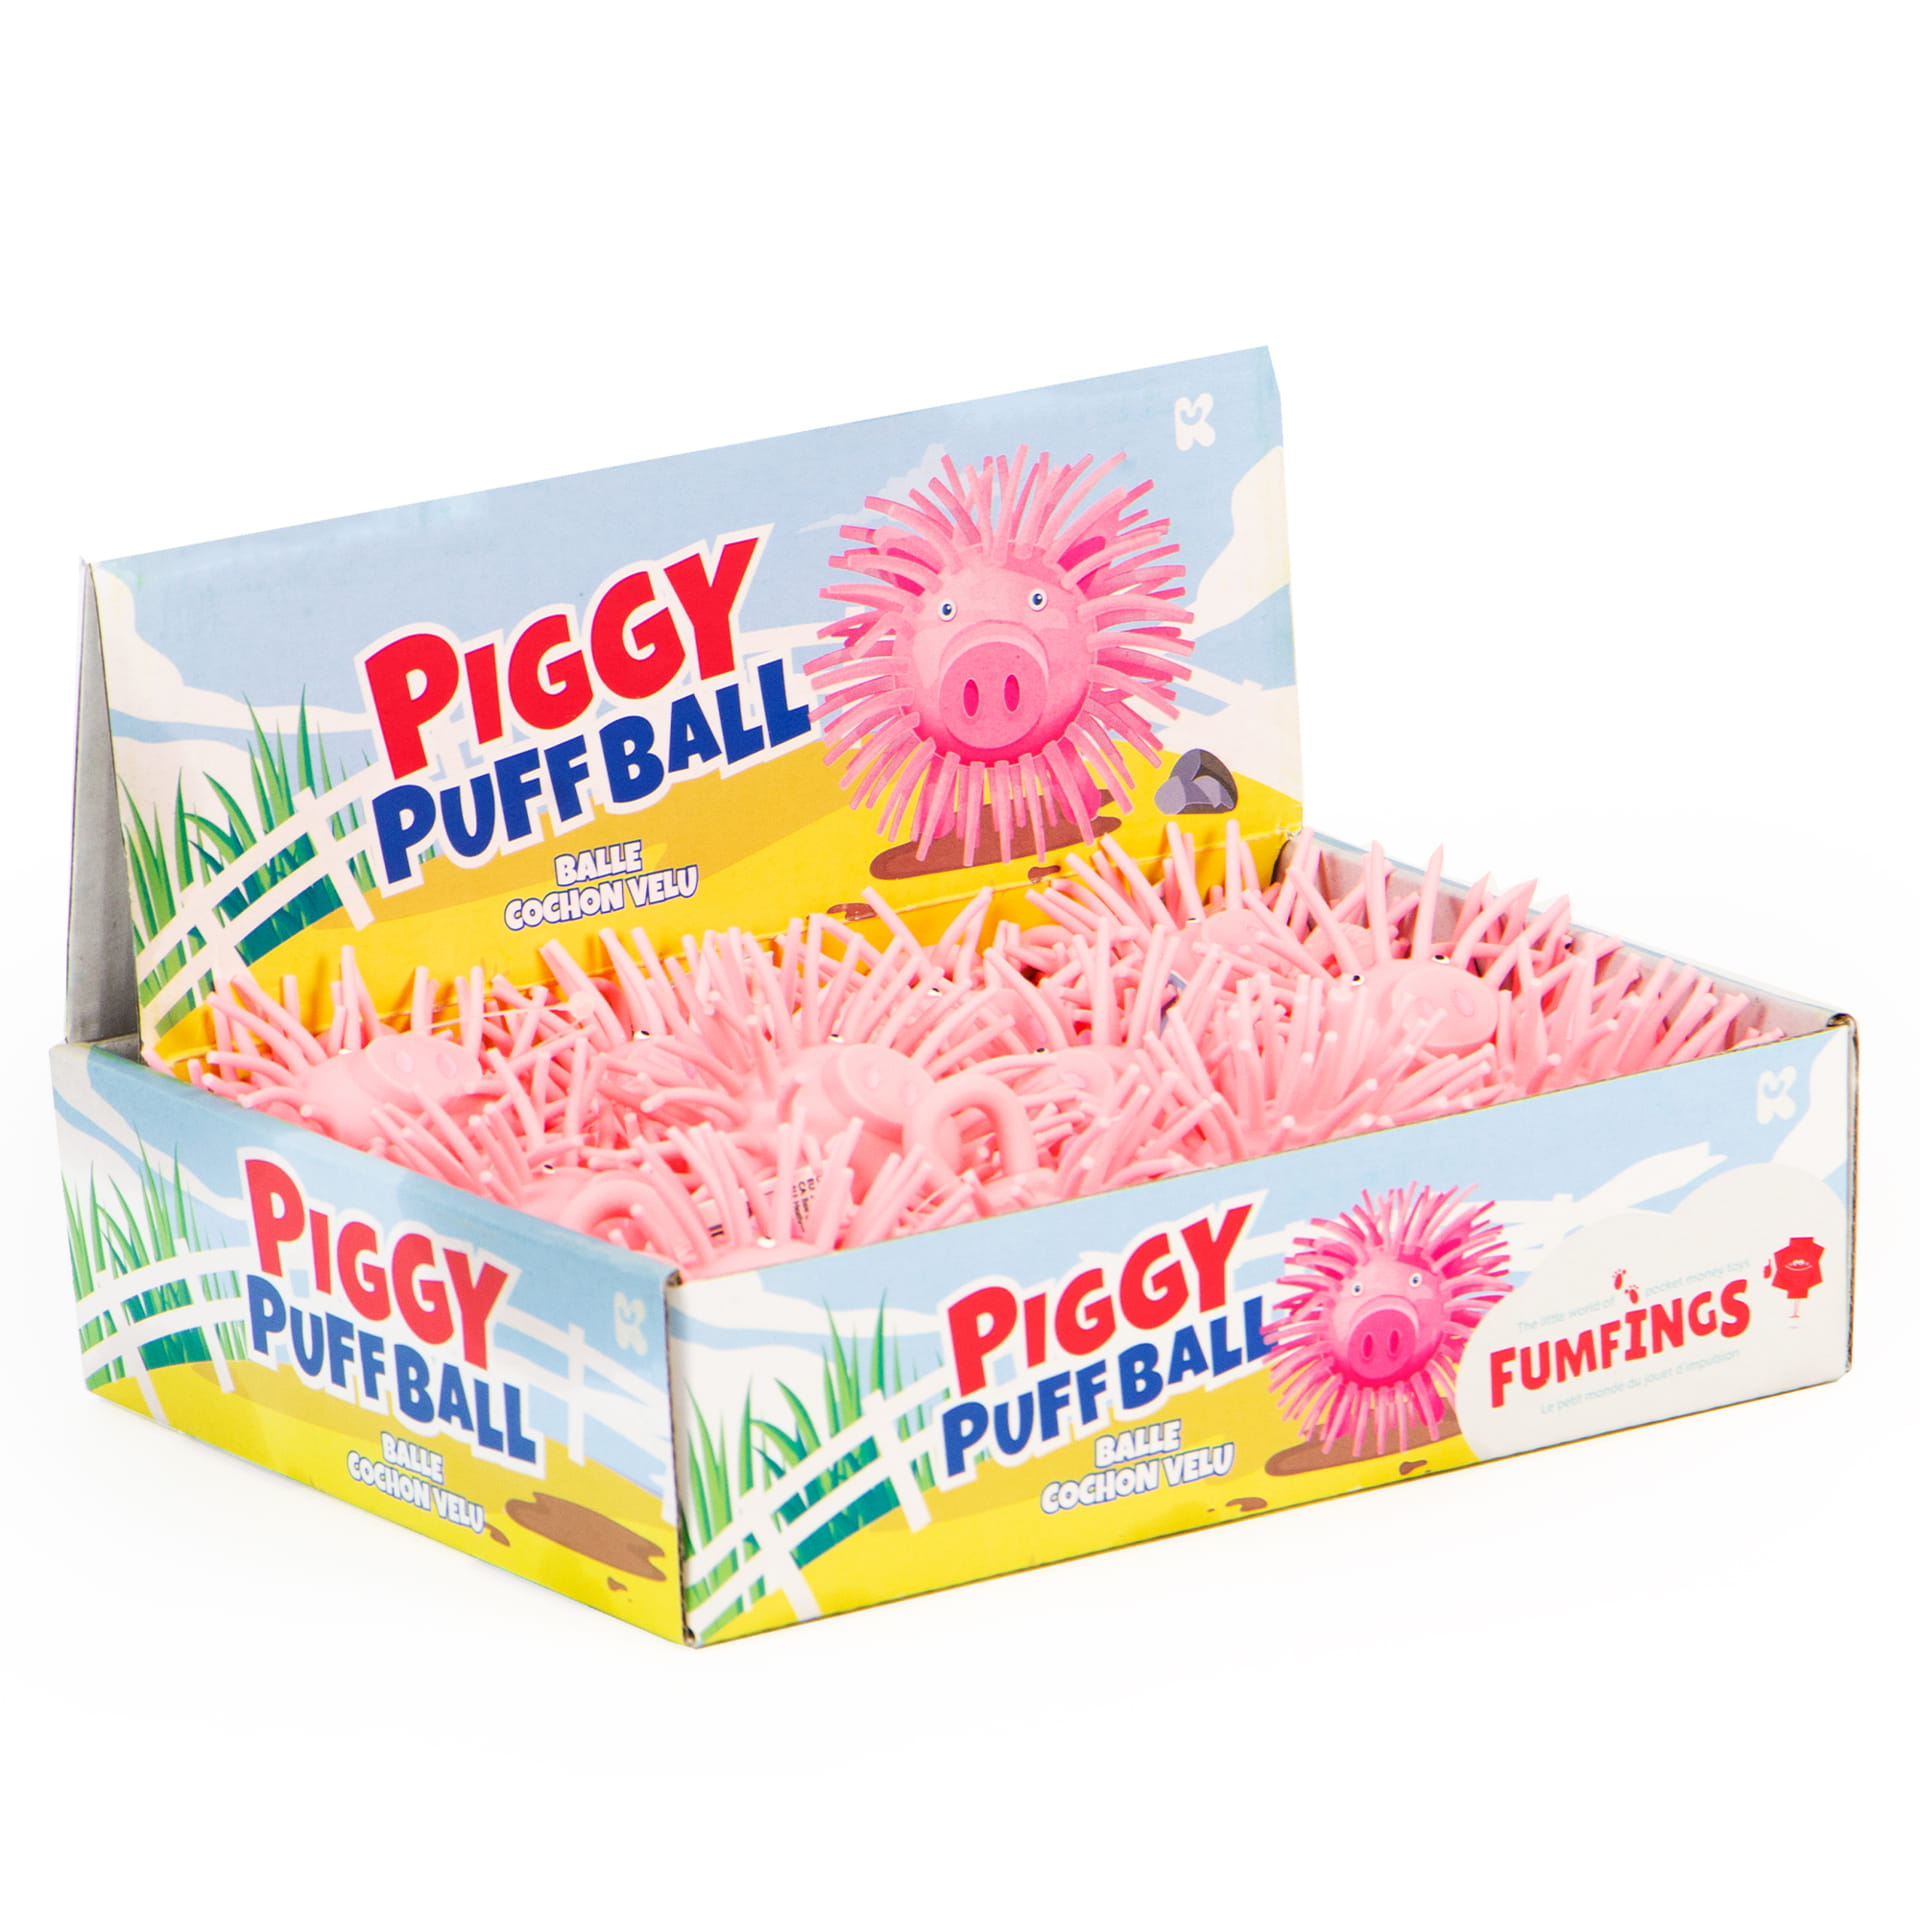 Piggy puffer ball only PIG